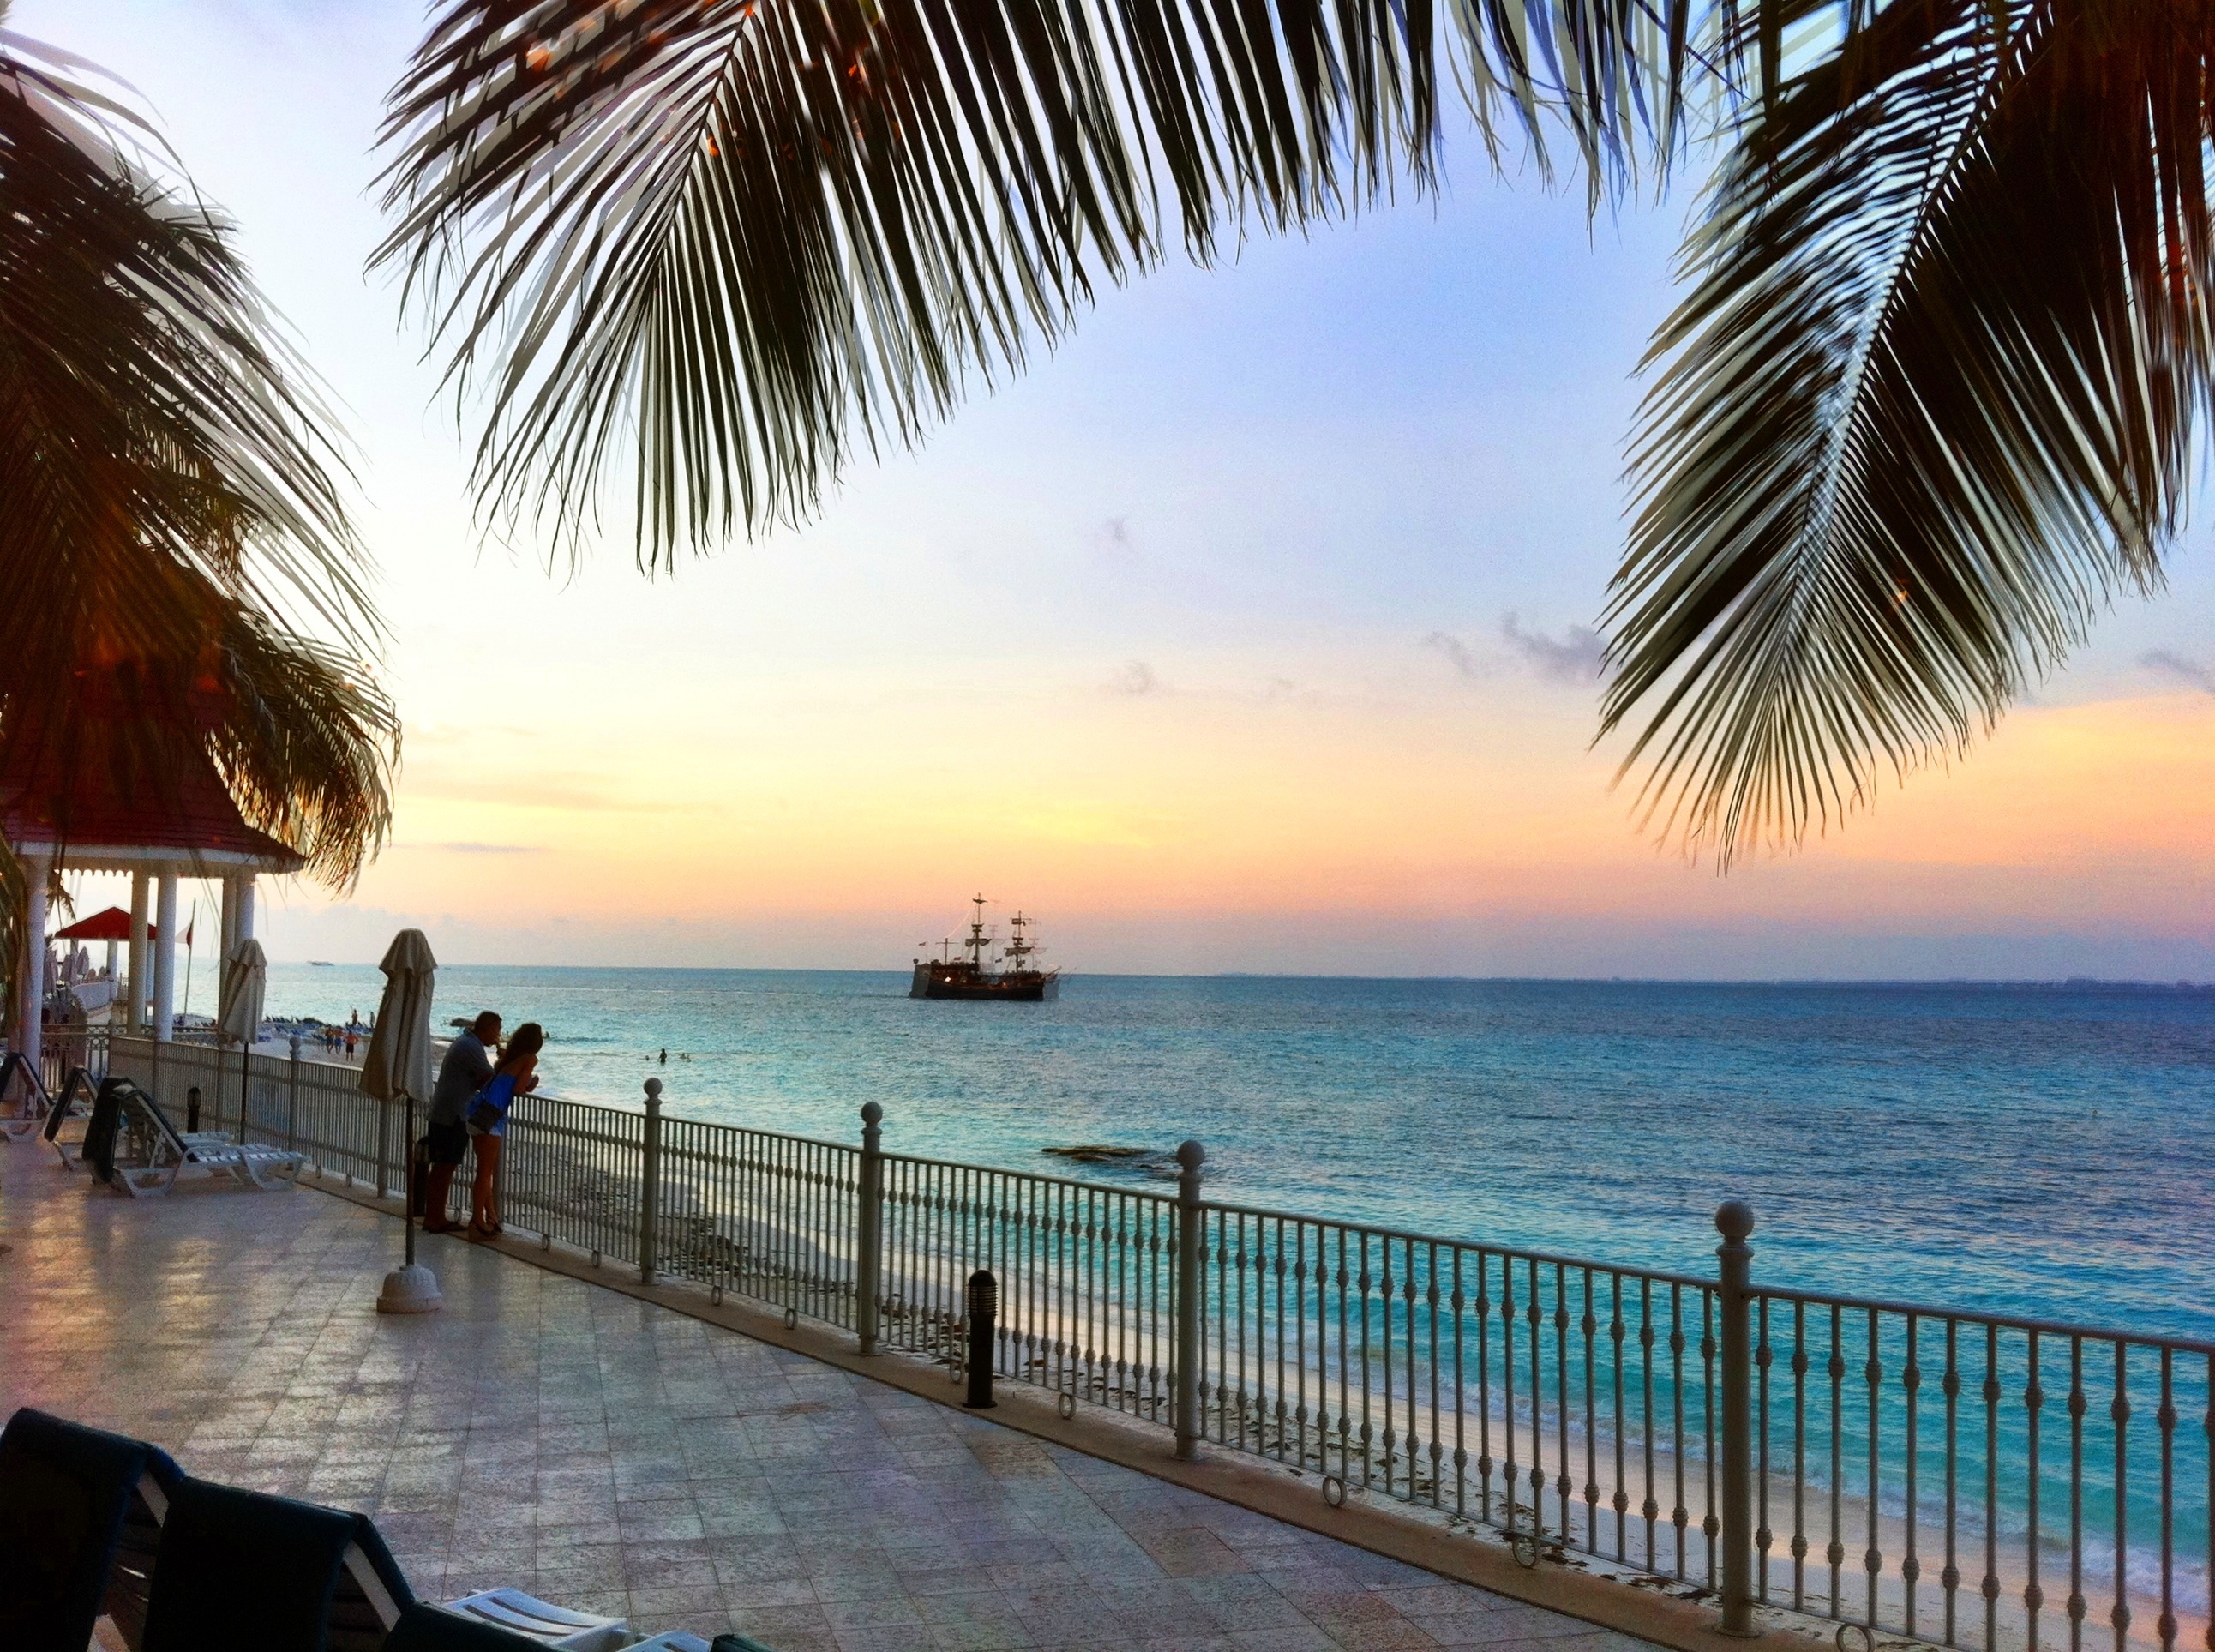 Day 338 – Cancun sunset